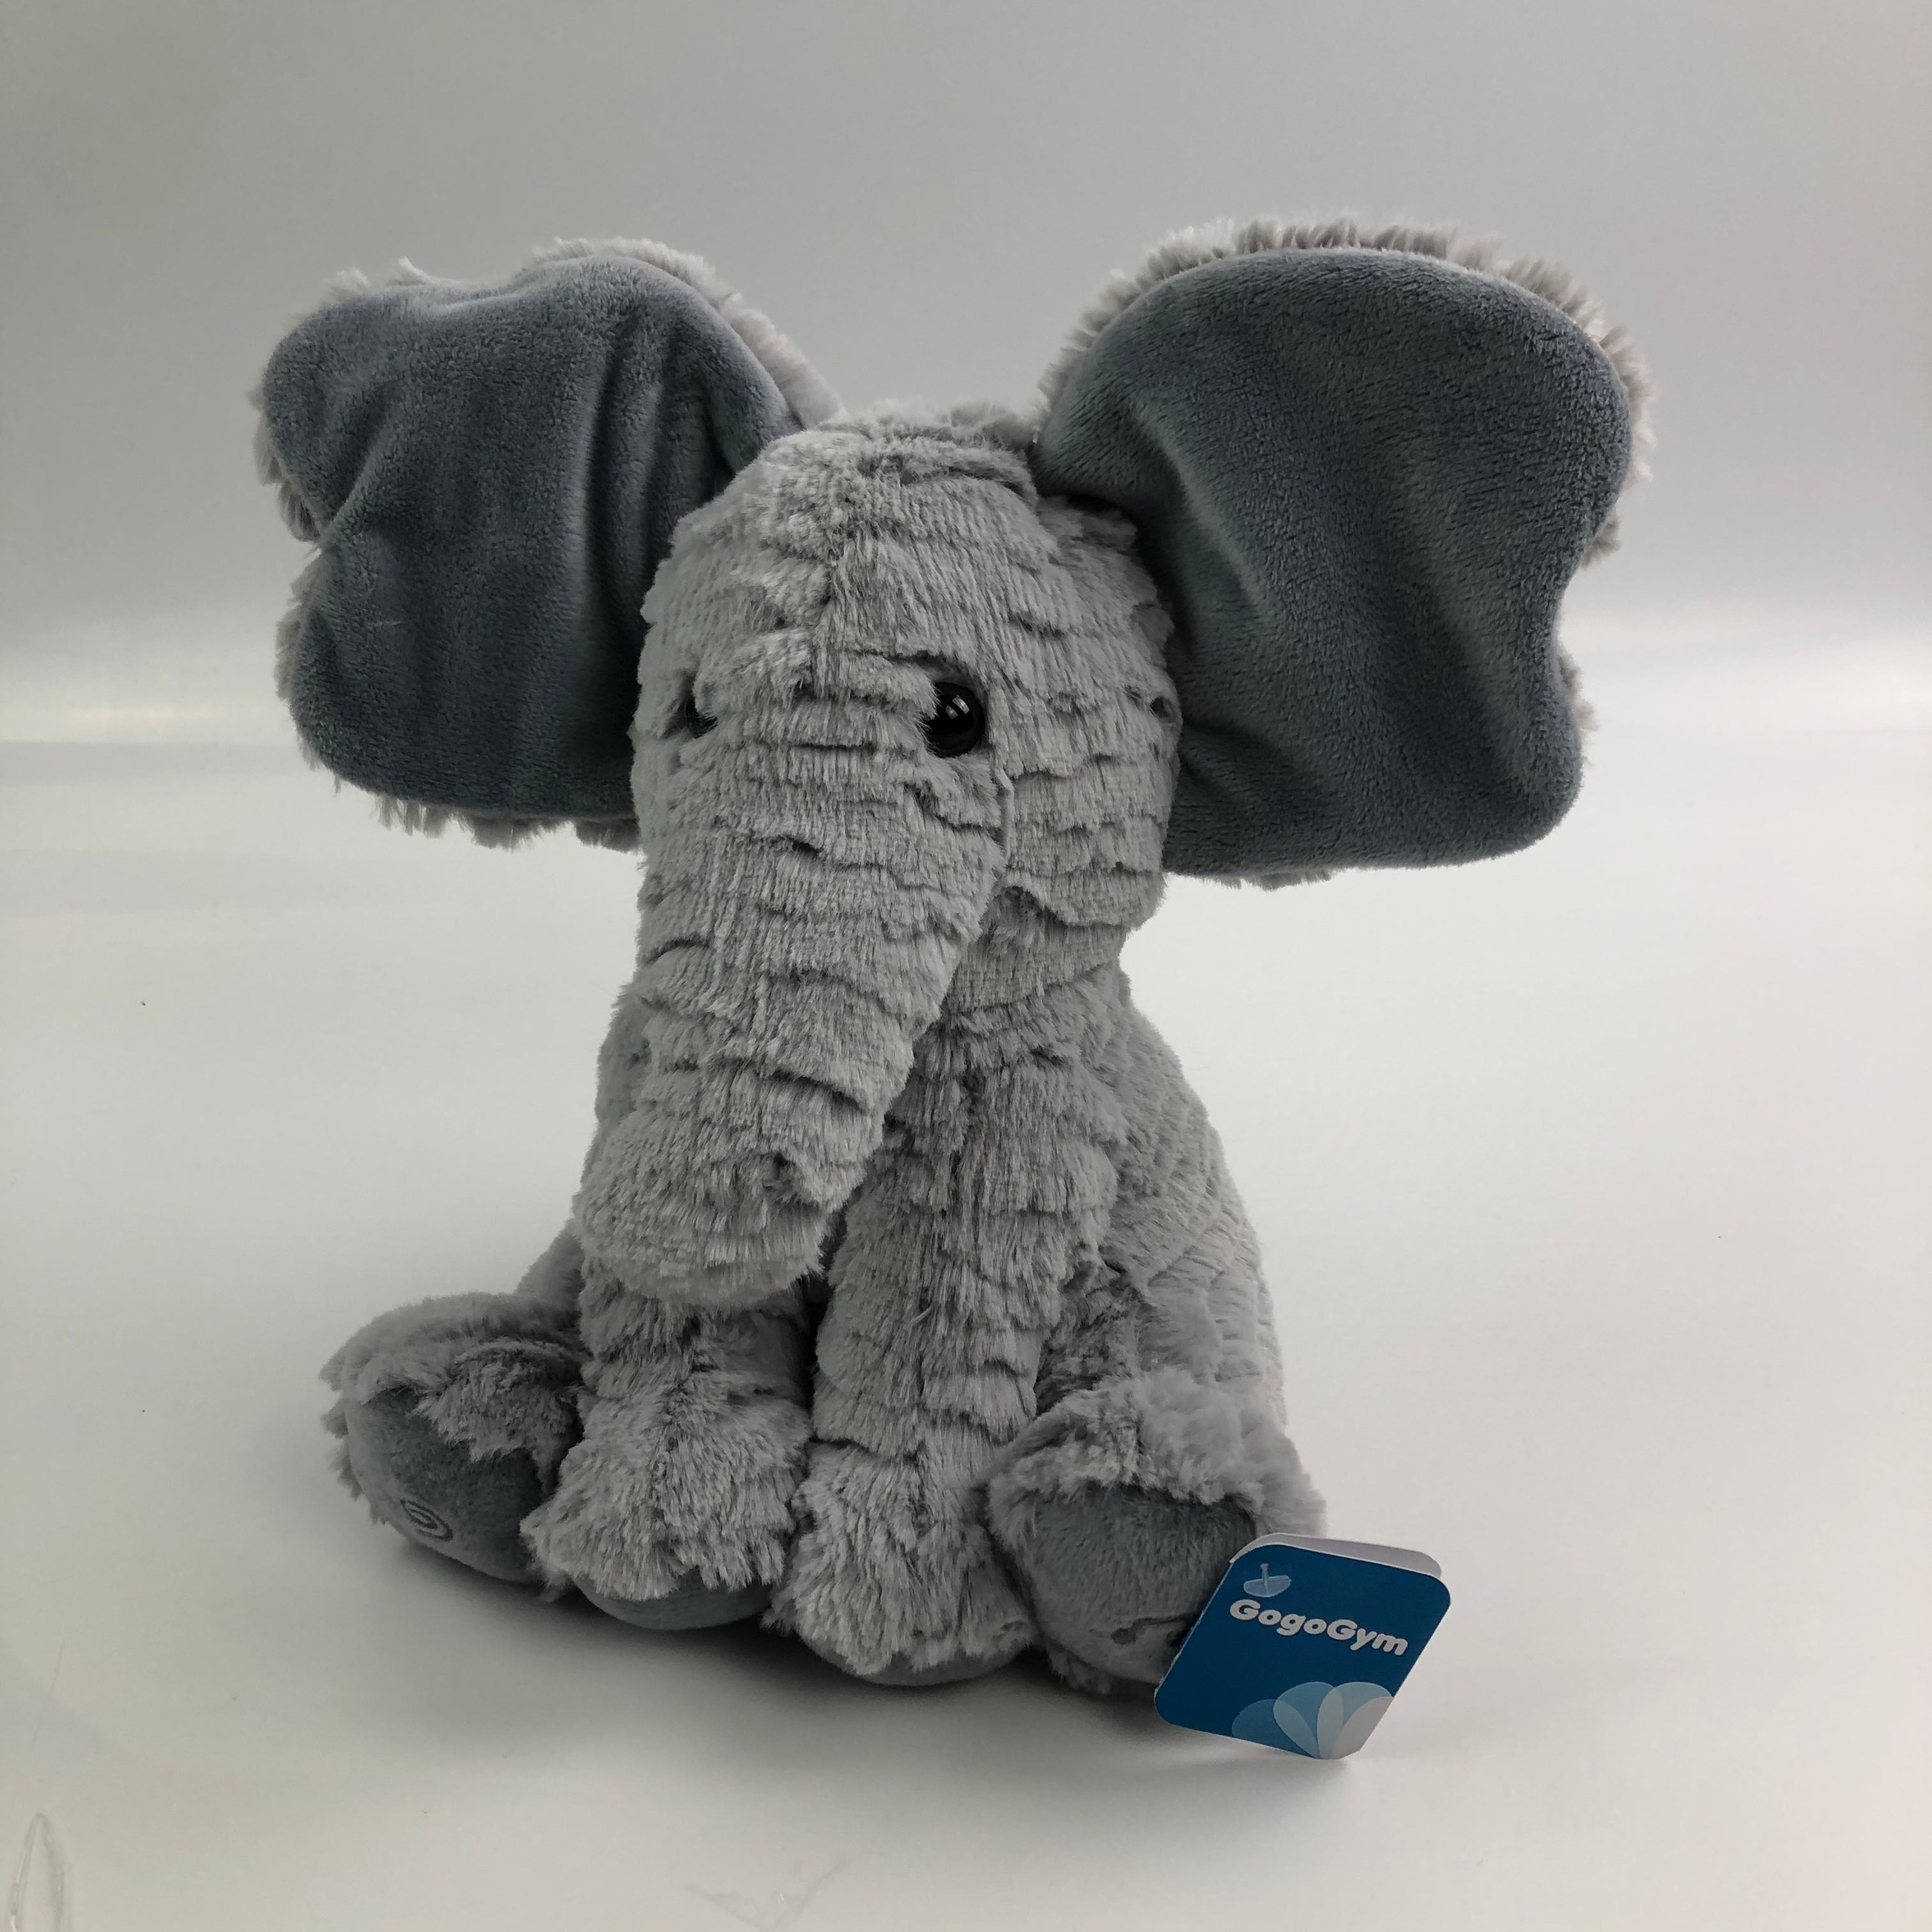 GoGoGym Stuffed Elephant Animal Plush Toy - Glow Guards